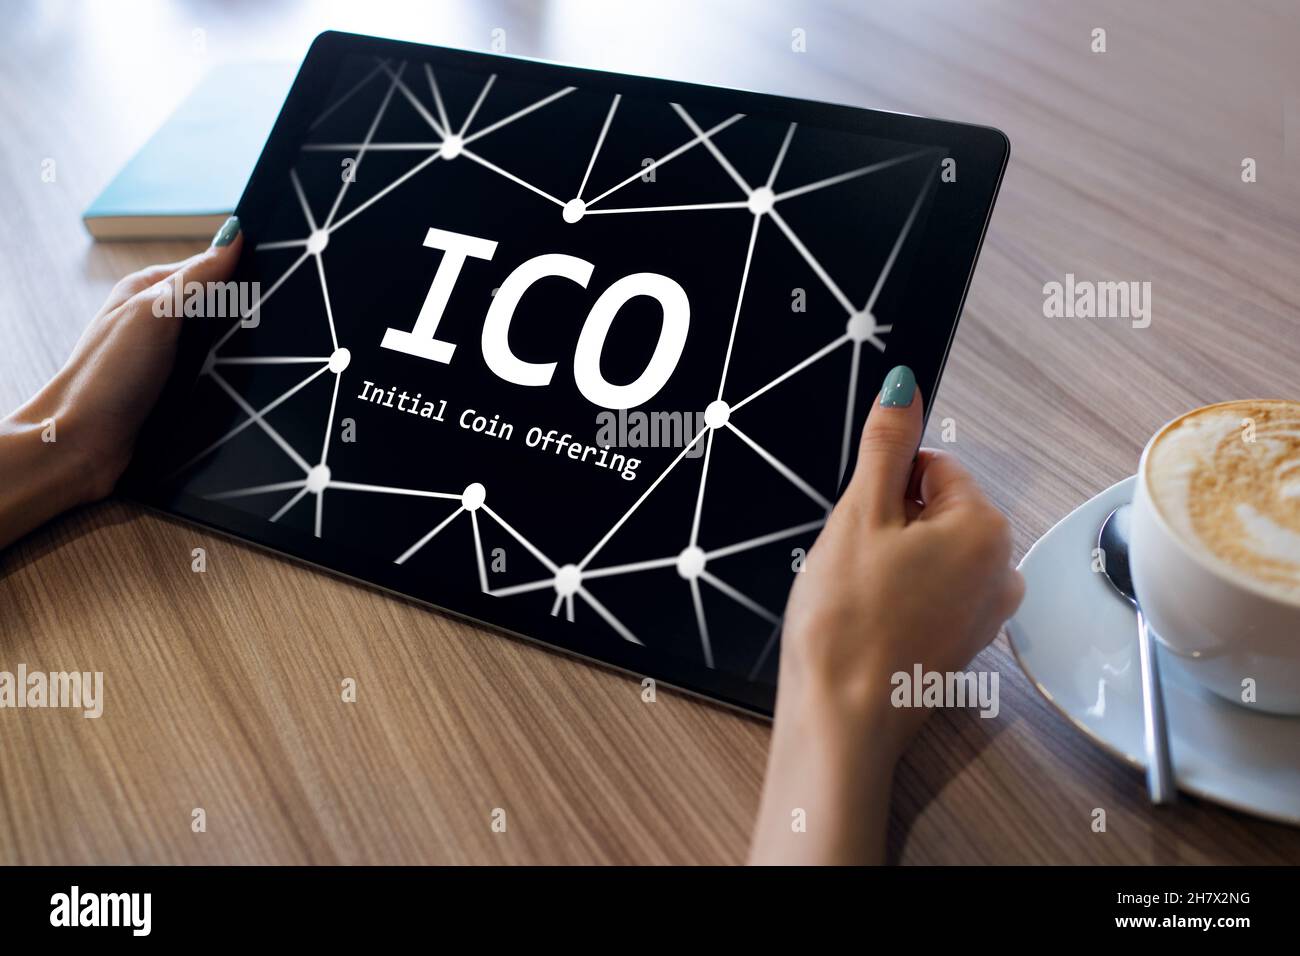 ICO - offre initiale de pièces. Concept de la technologie financière et de la blockchain. Banque D'Images